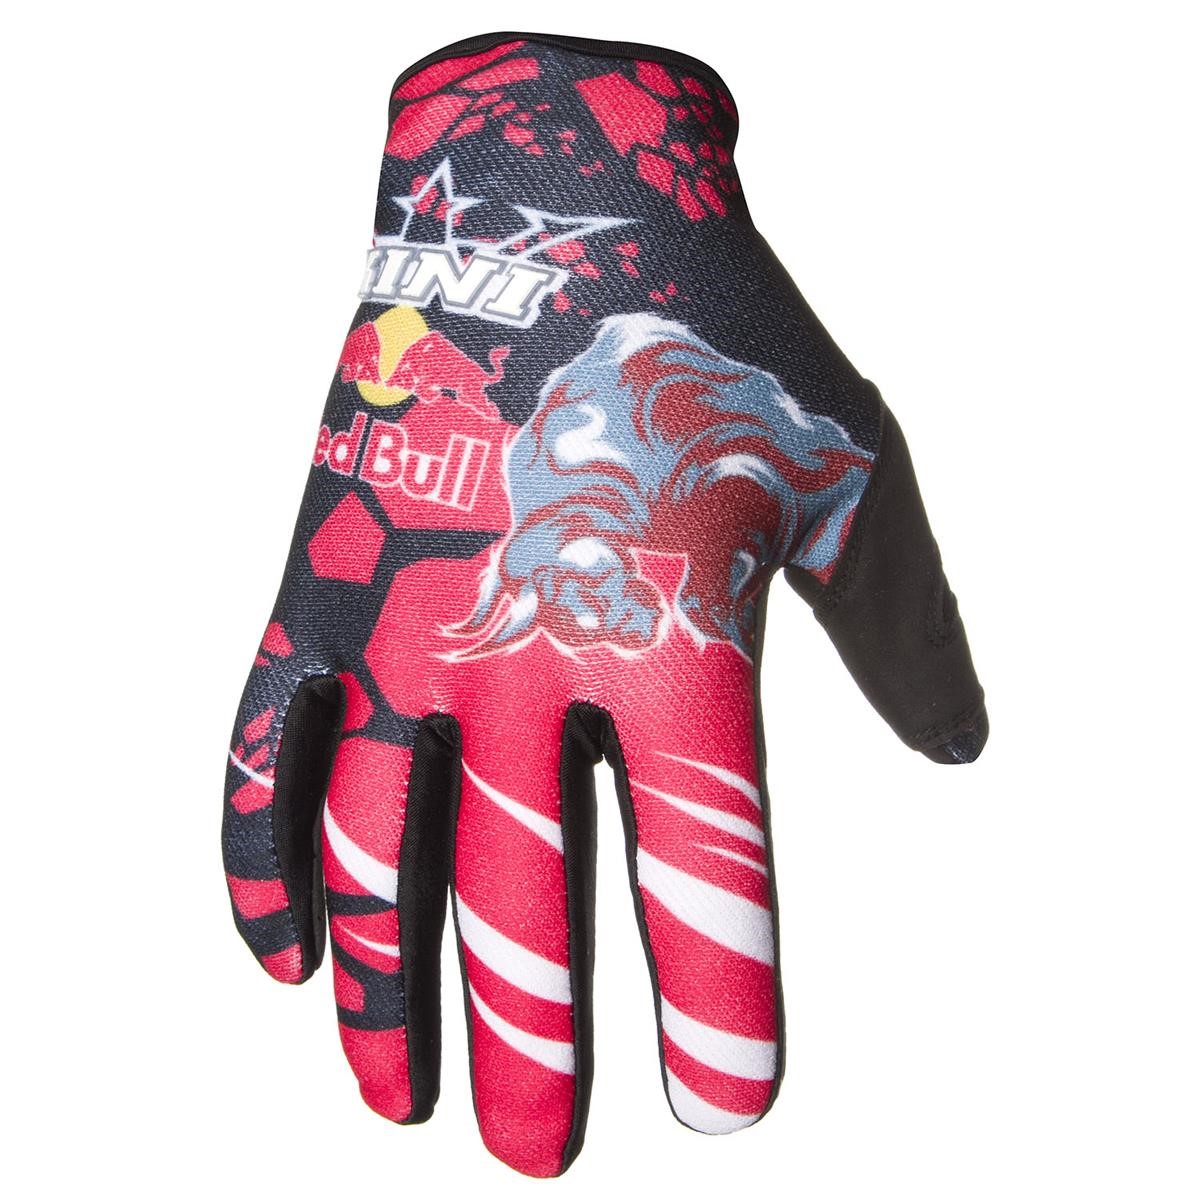 Kini Red Bull Gloves Revolution Red/Black